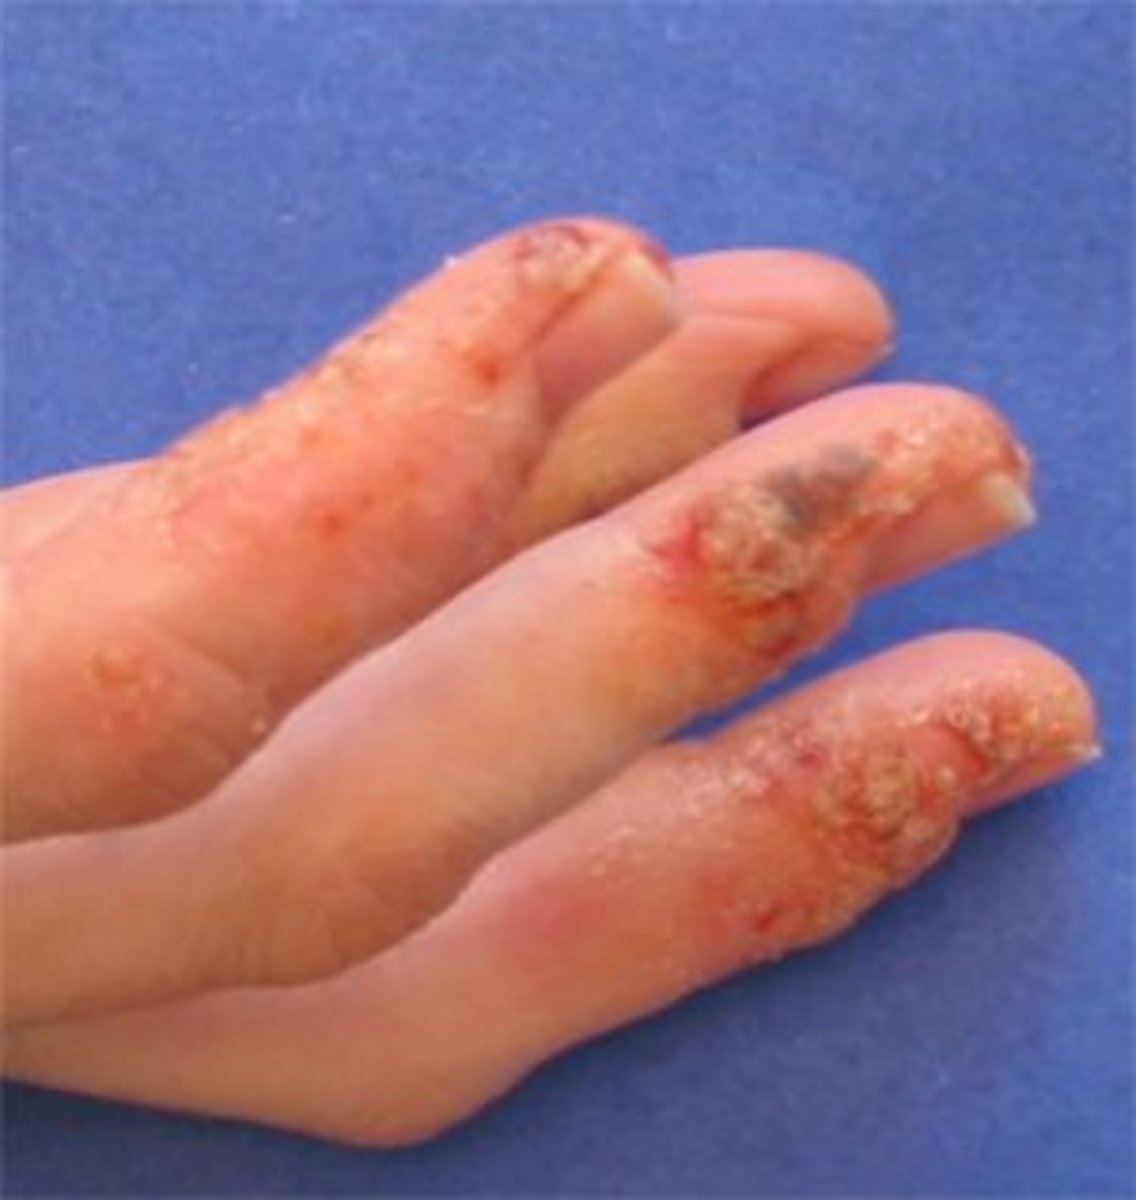 how-i-treated-my-pompholyx-eczema-dyshidrotic-dermatitis-skin-condition